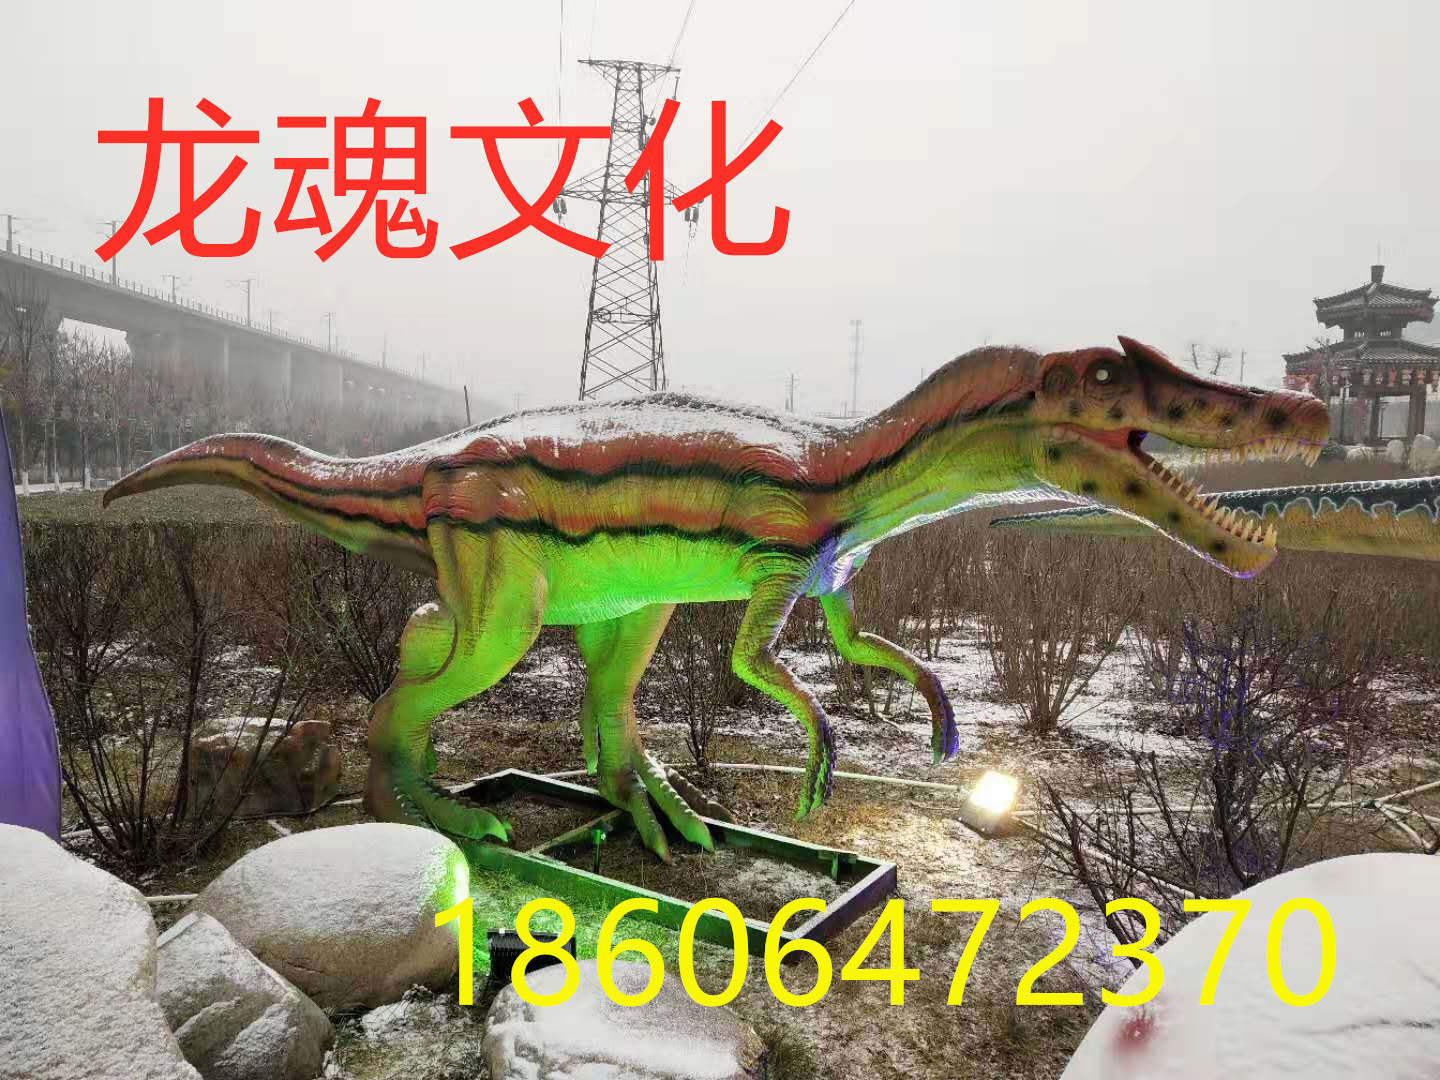 上海市仿真恐龙出售、租赁，变形金刚舞台厂家